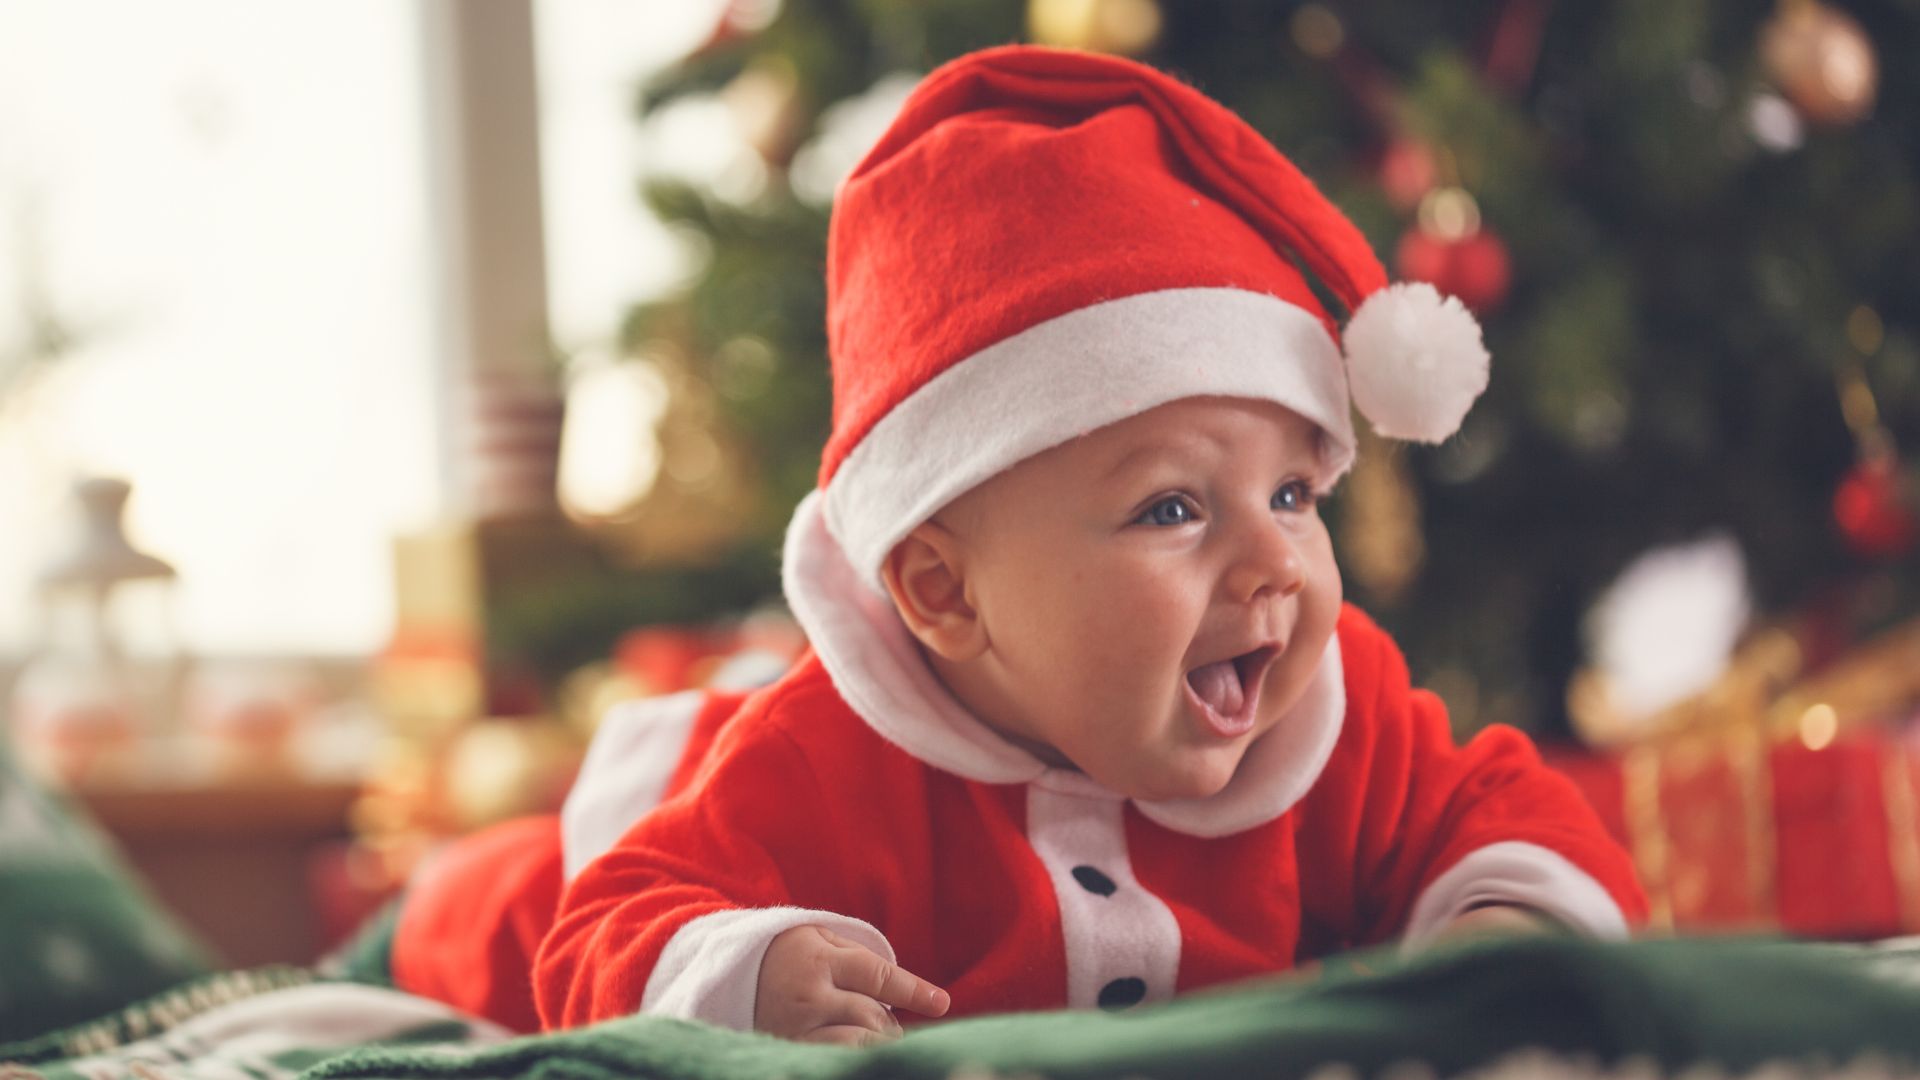 Para os pais com bebés, pode ser uma oportunidade de introduzir novos sabores no natal. Transformando as celebrações em momentos de descoberta.